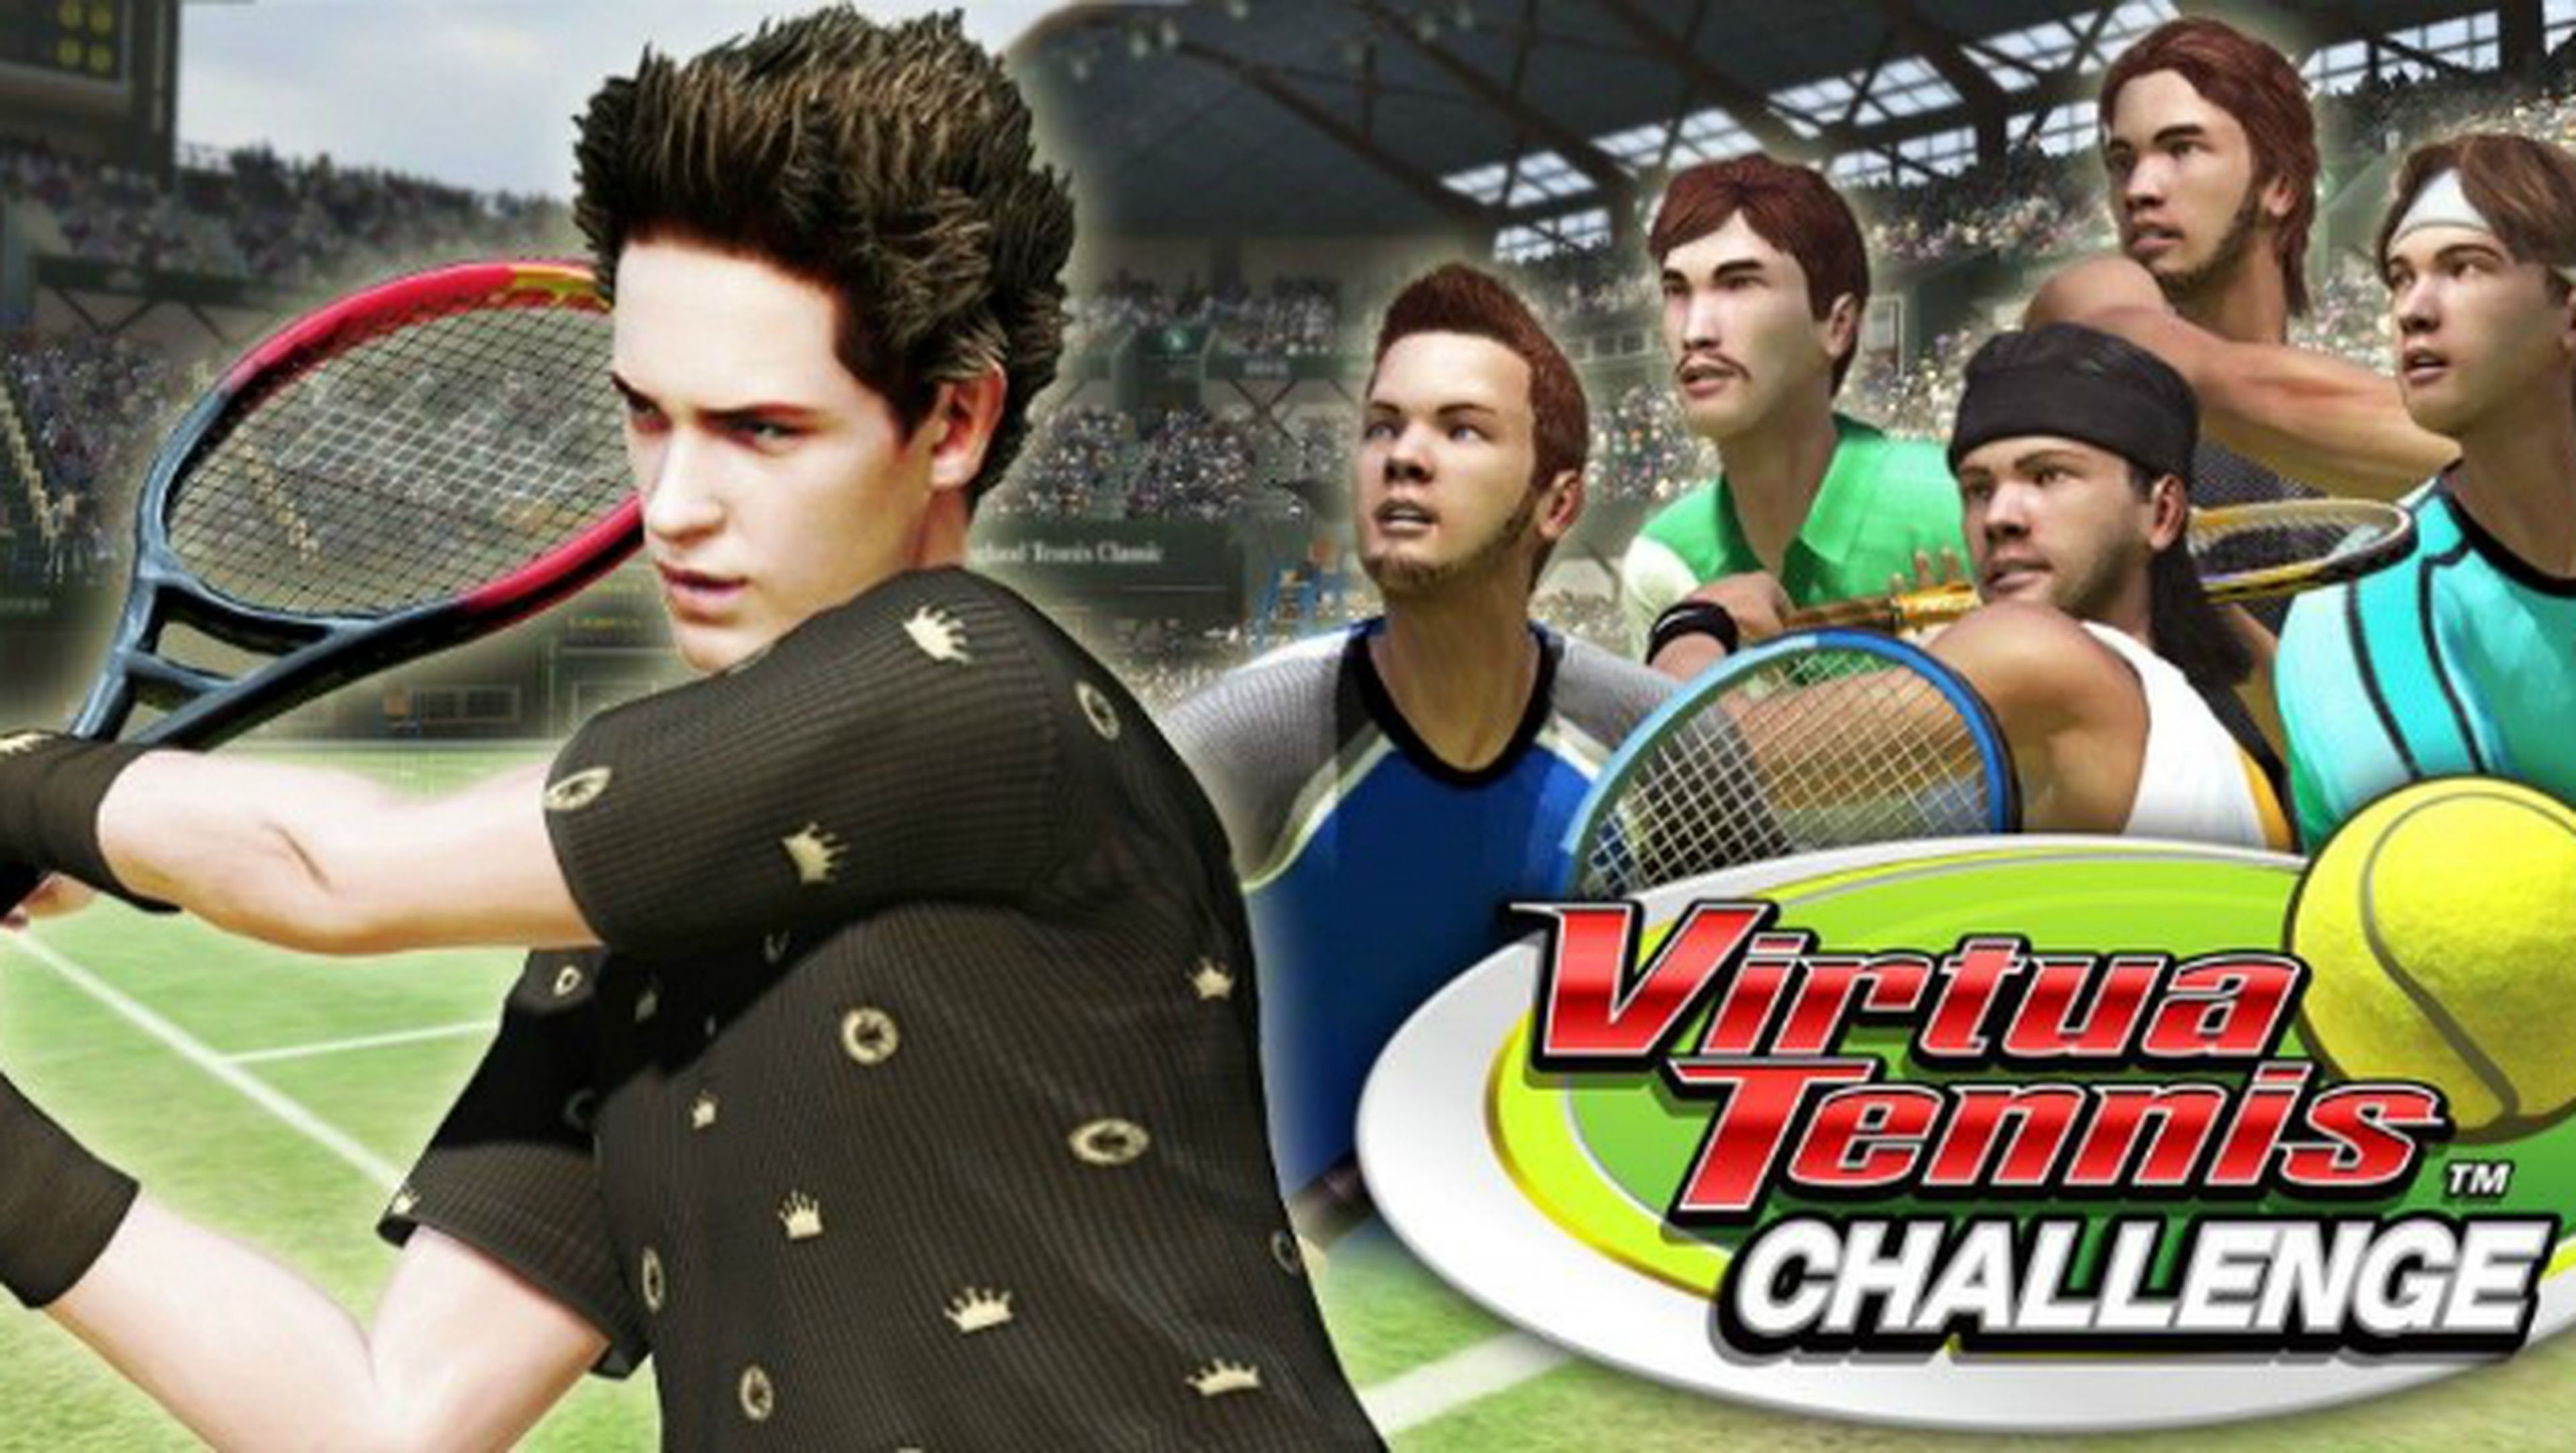 Virtua Tennis Challenge, el videojuego de tenis para emular a Nadal